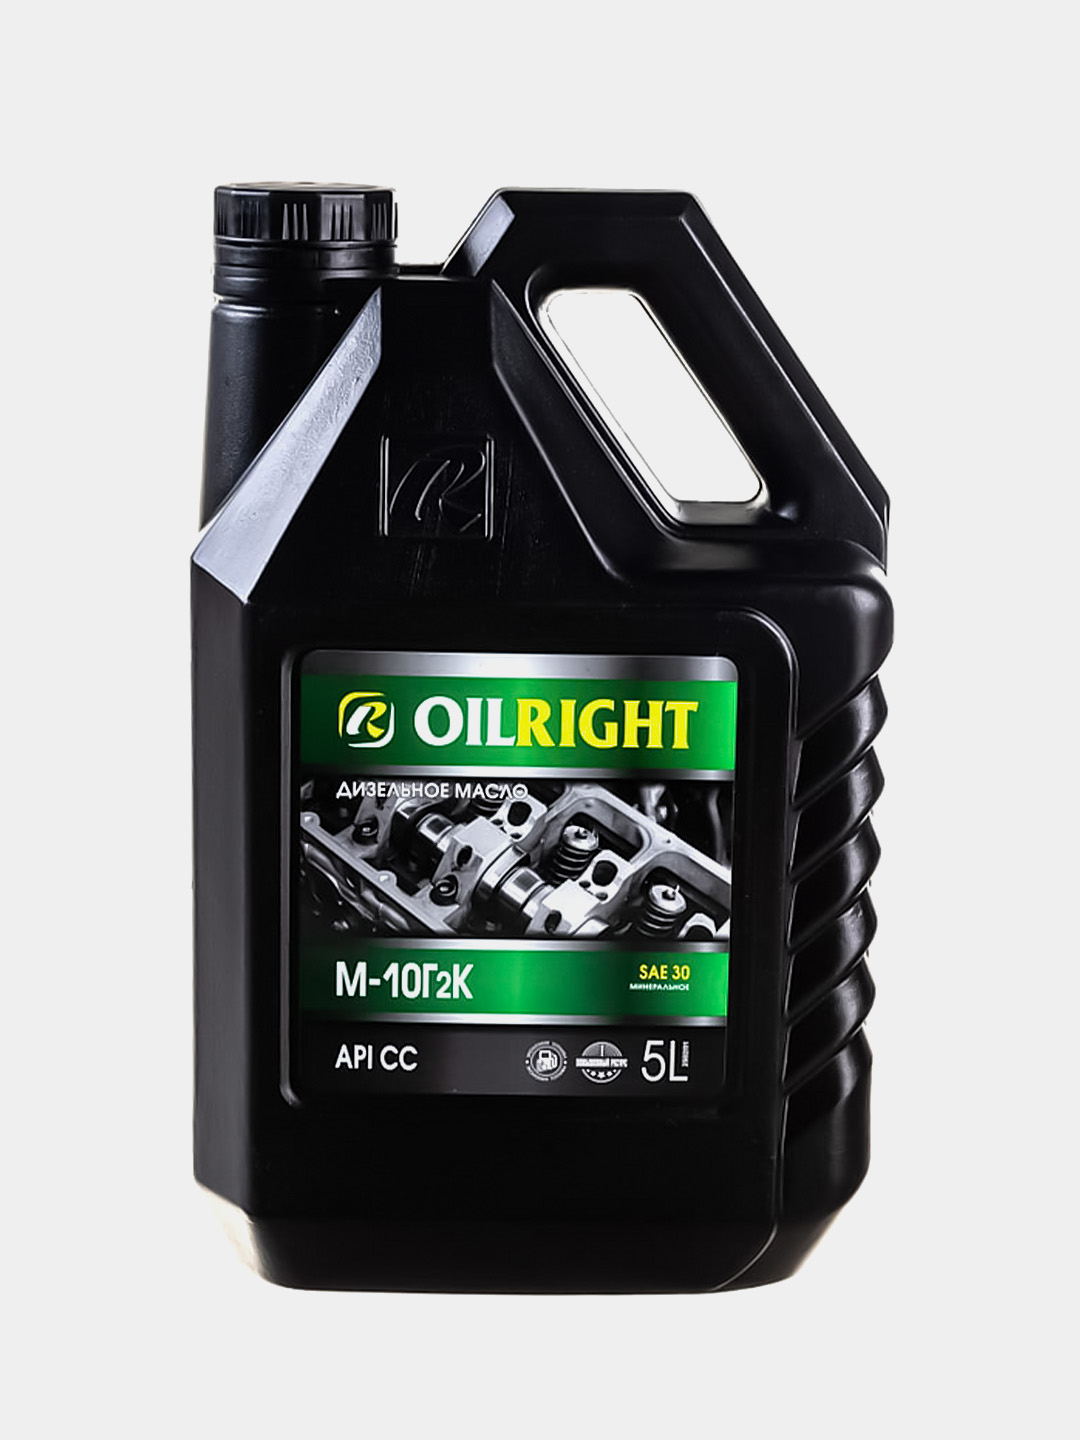  моторное масло OILRIGHT М10Г2К API CC, 1л/ 5л/ 10л  .